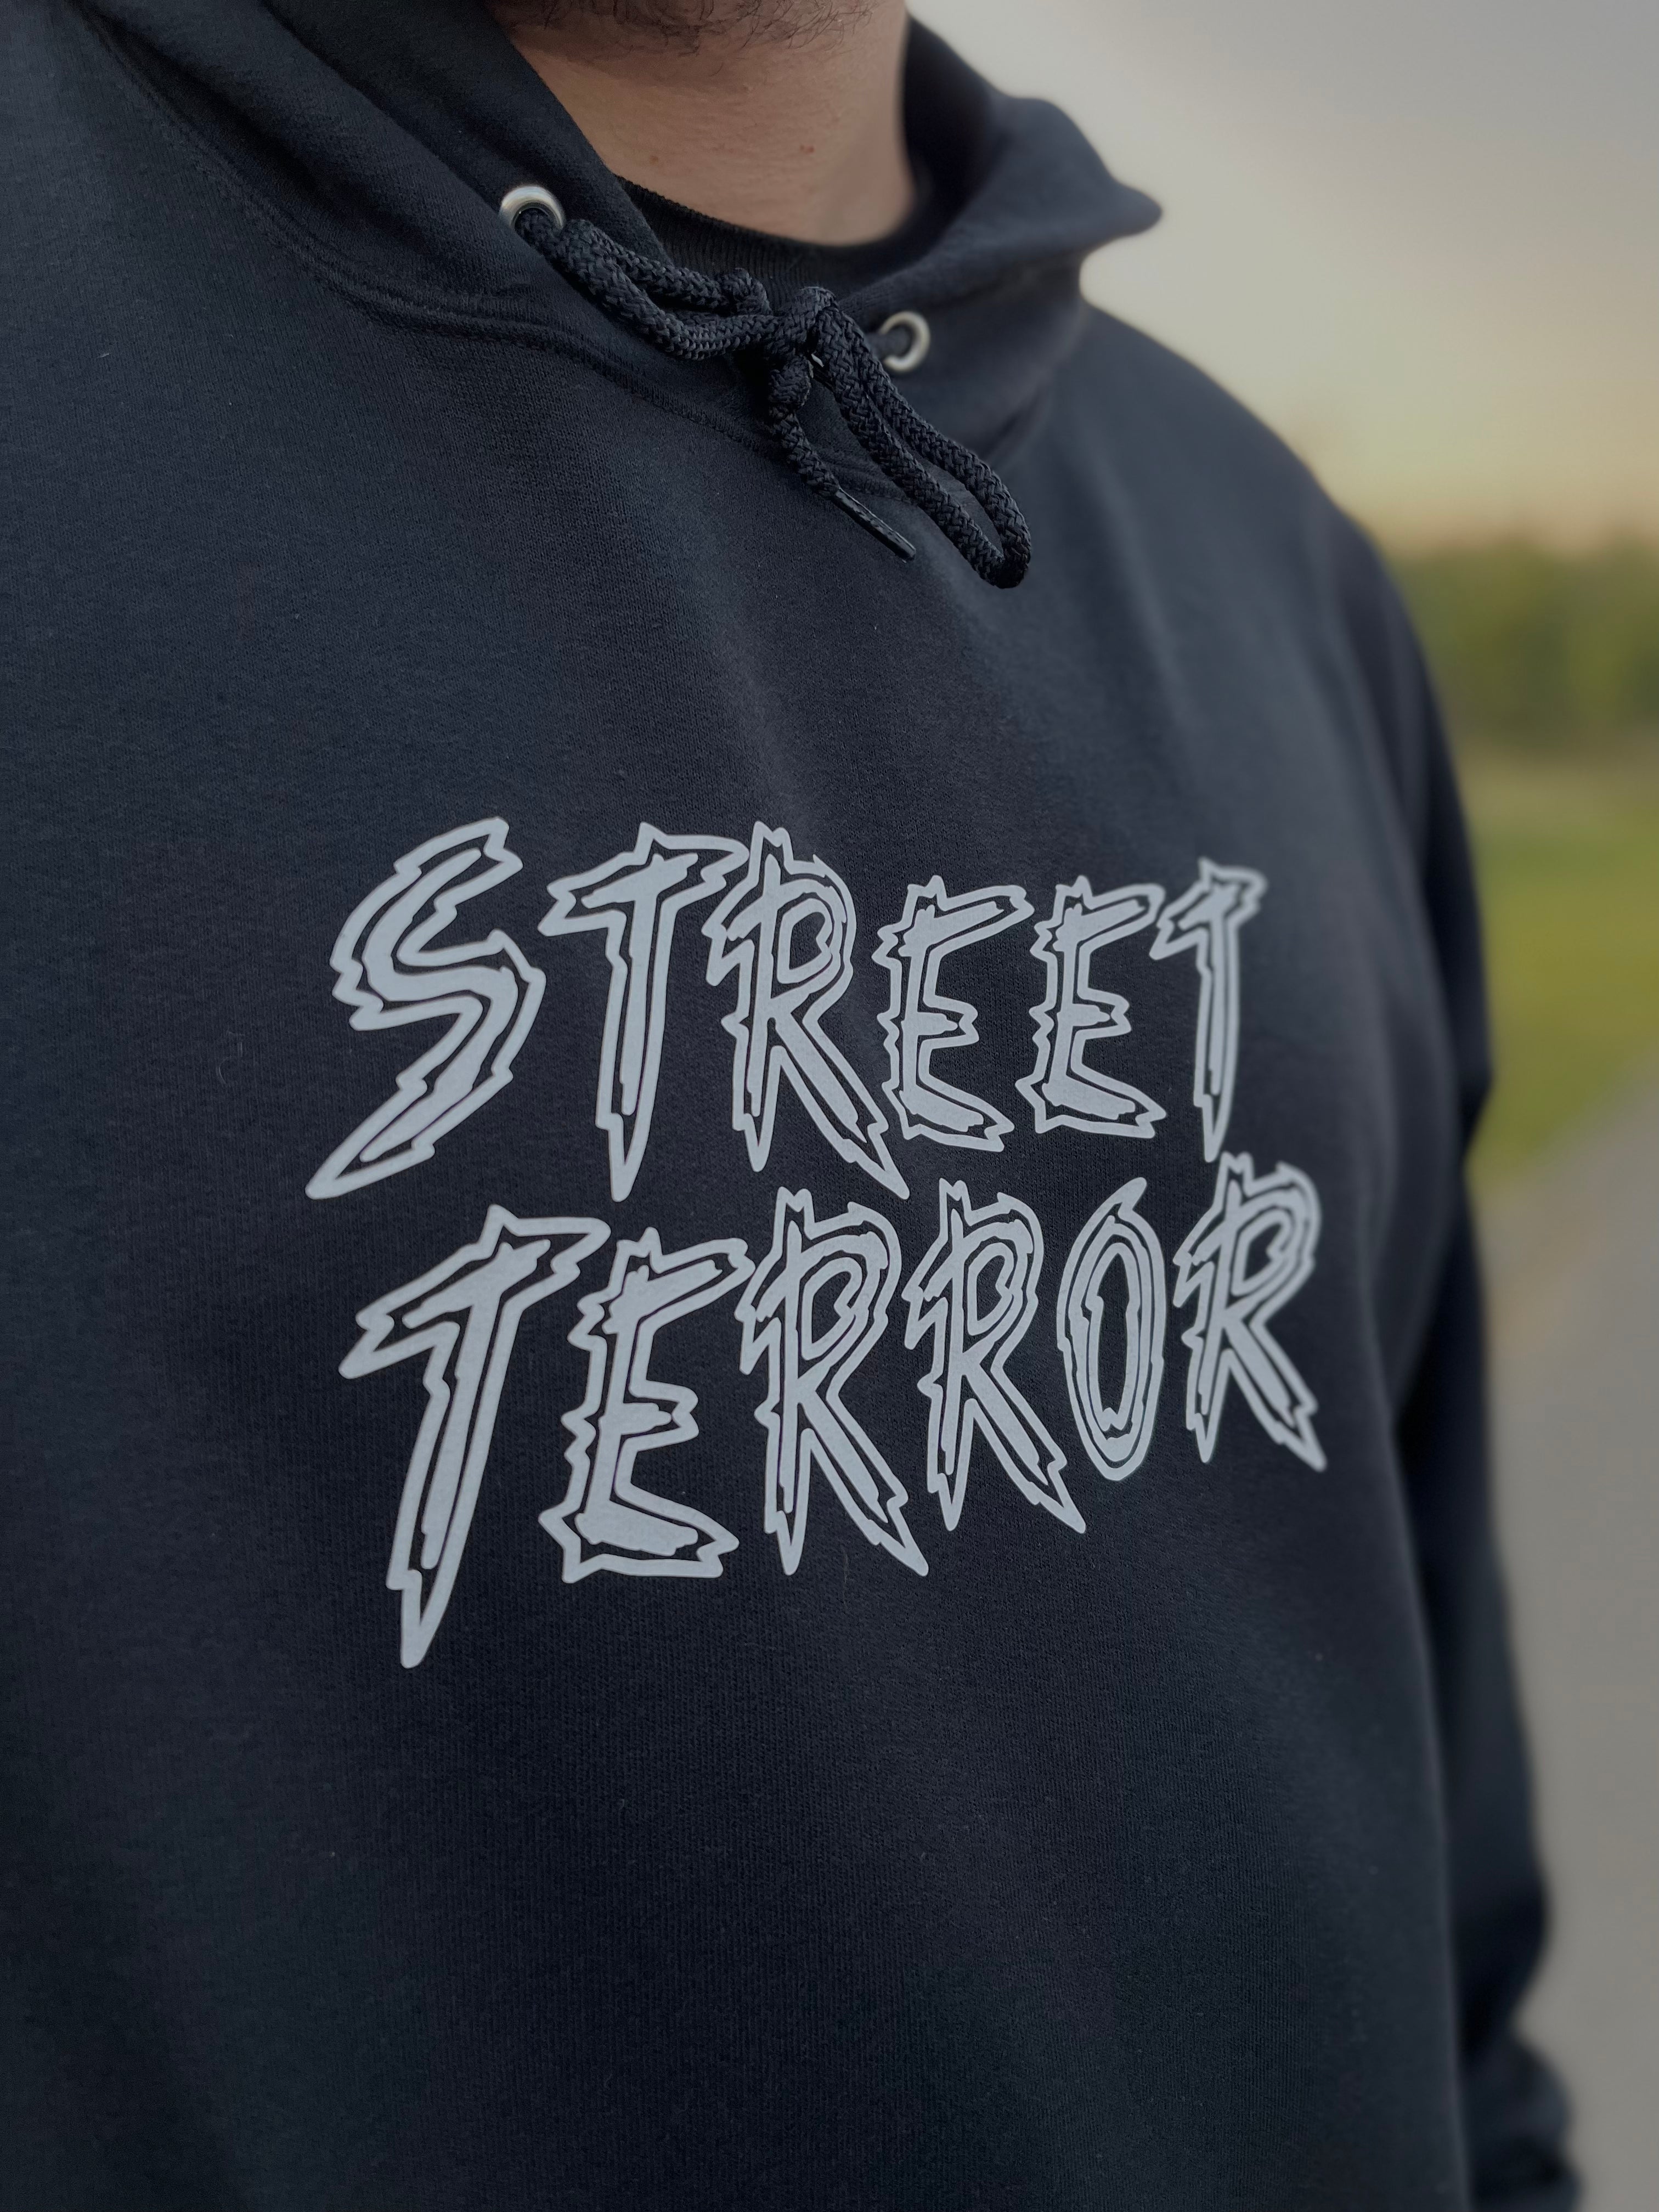 STREET TERROR V4